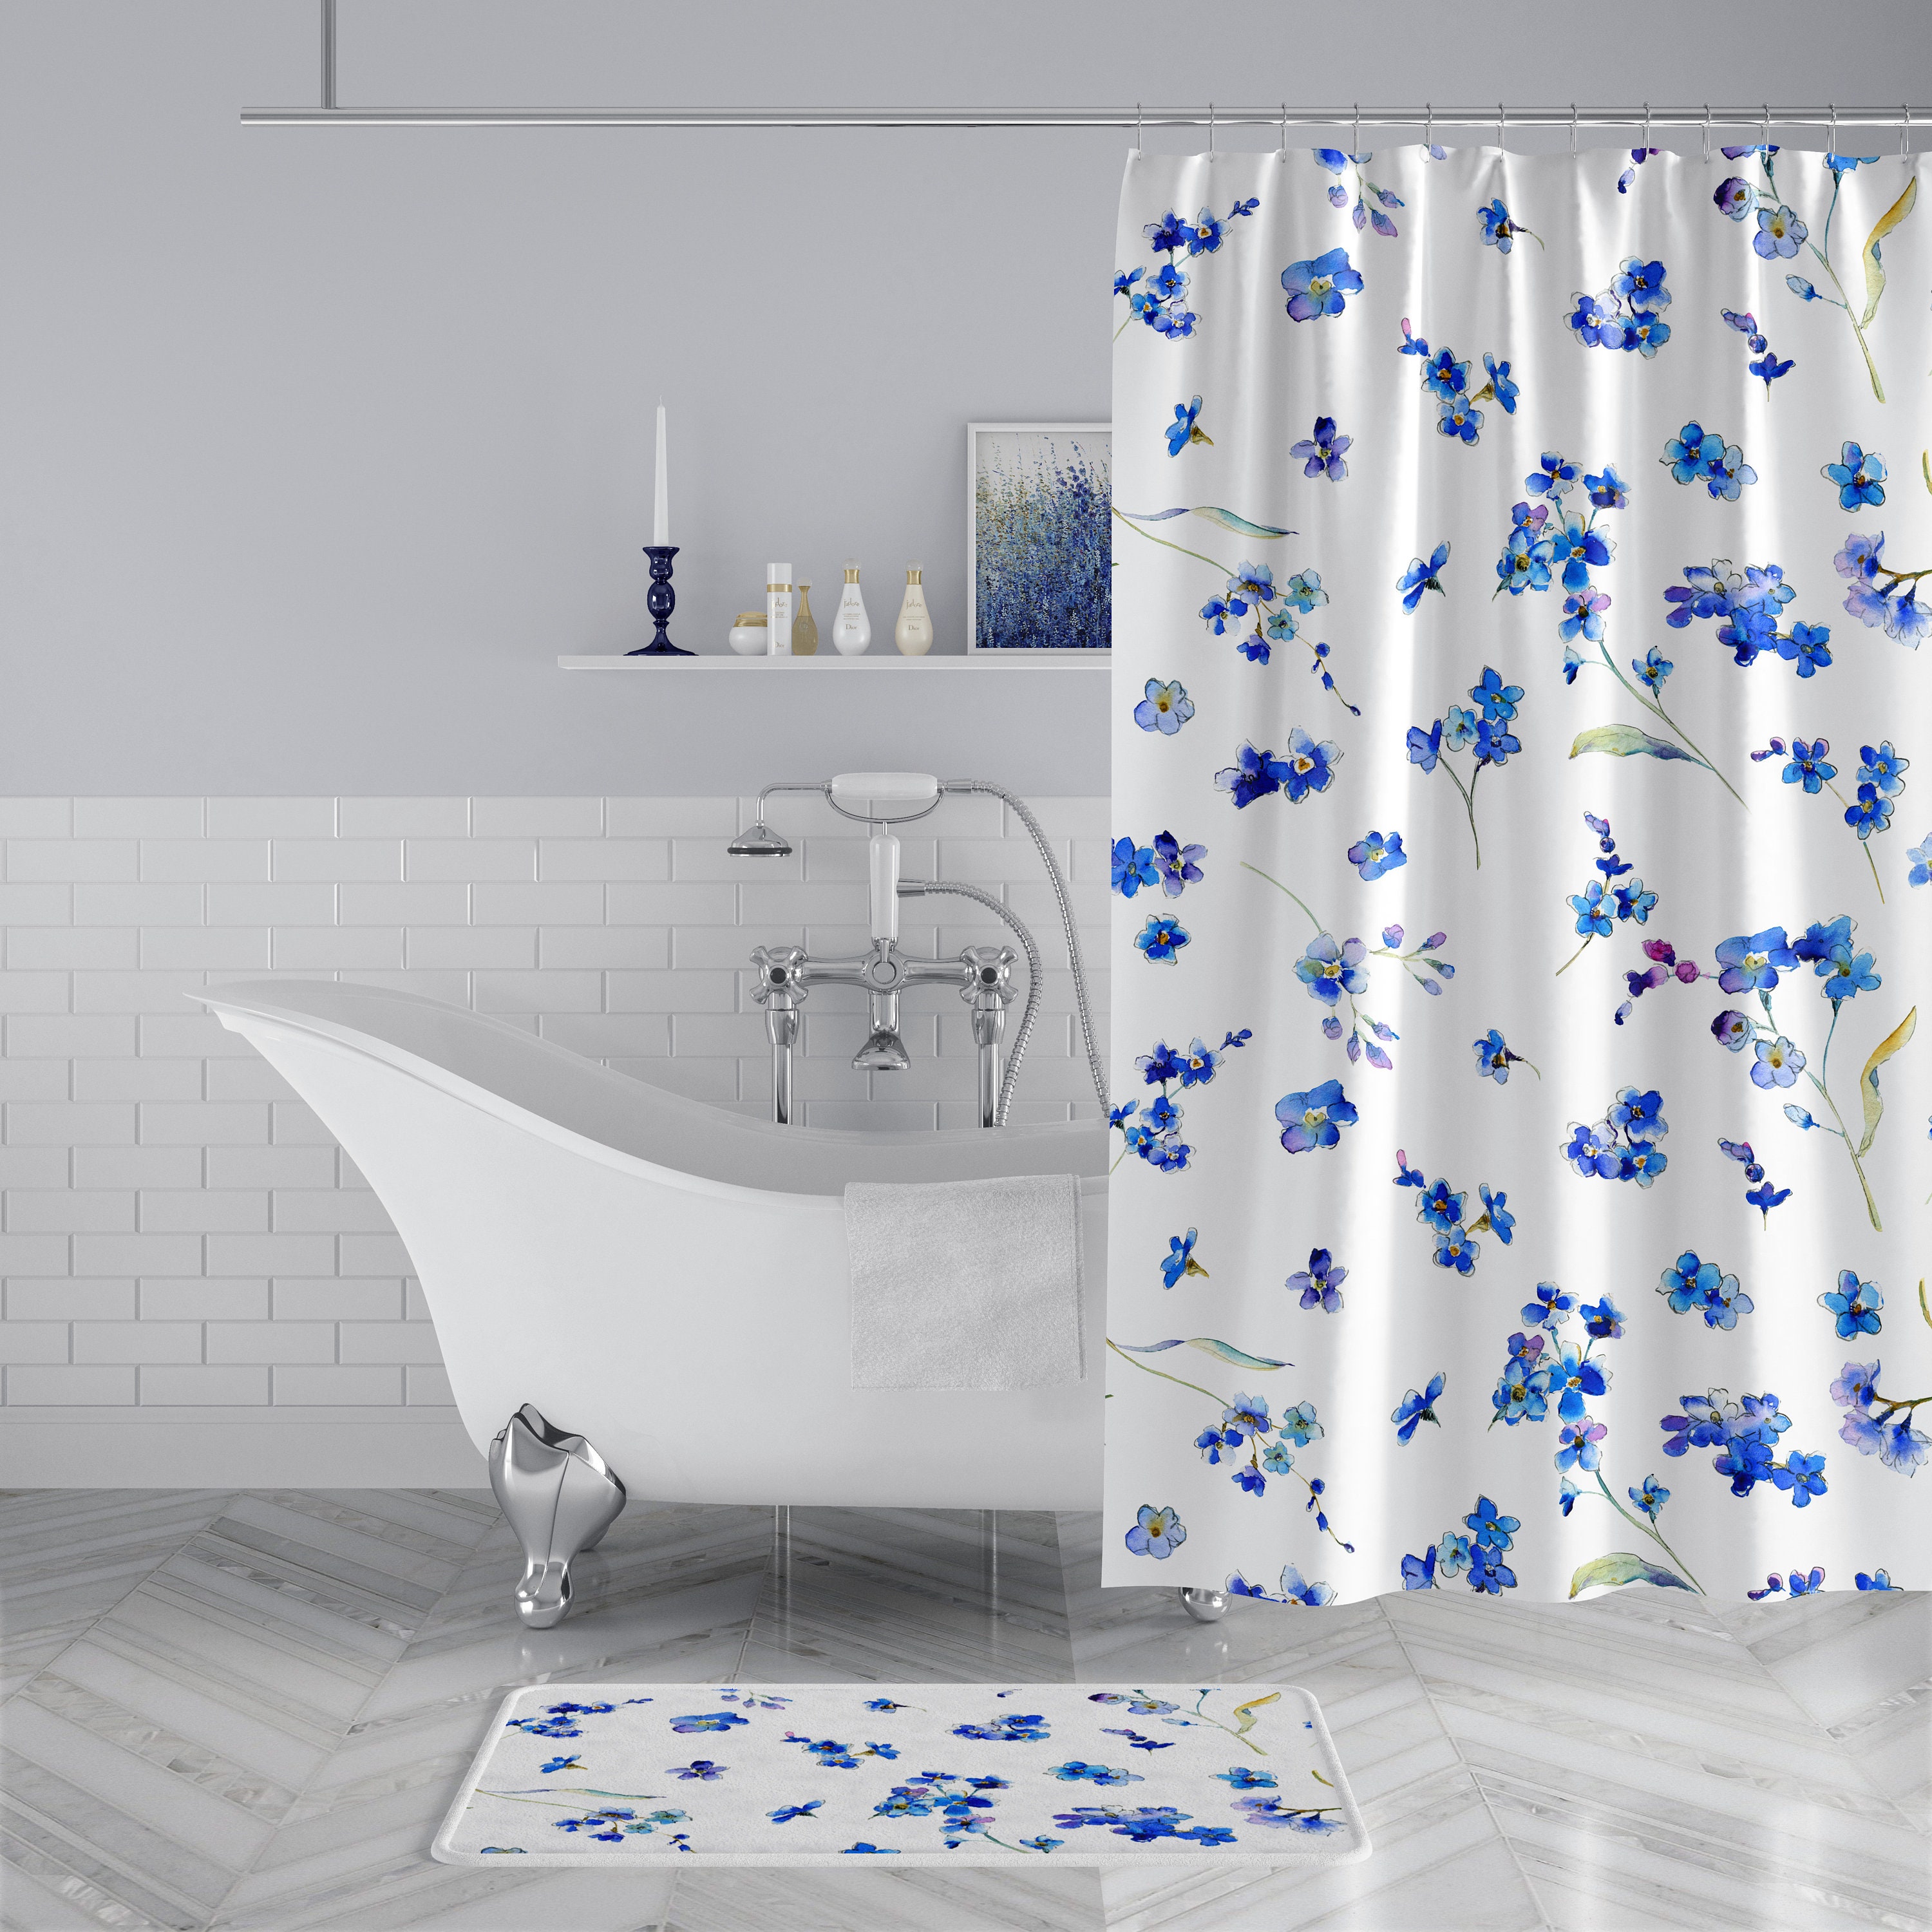 Style Quarters - Cortina de ducha blanca, cortinas de ducha de retazos con  textura de gofre, cortinas de ducha de tela resistente al agua para baño